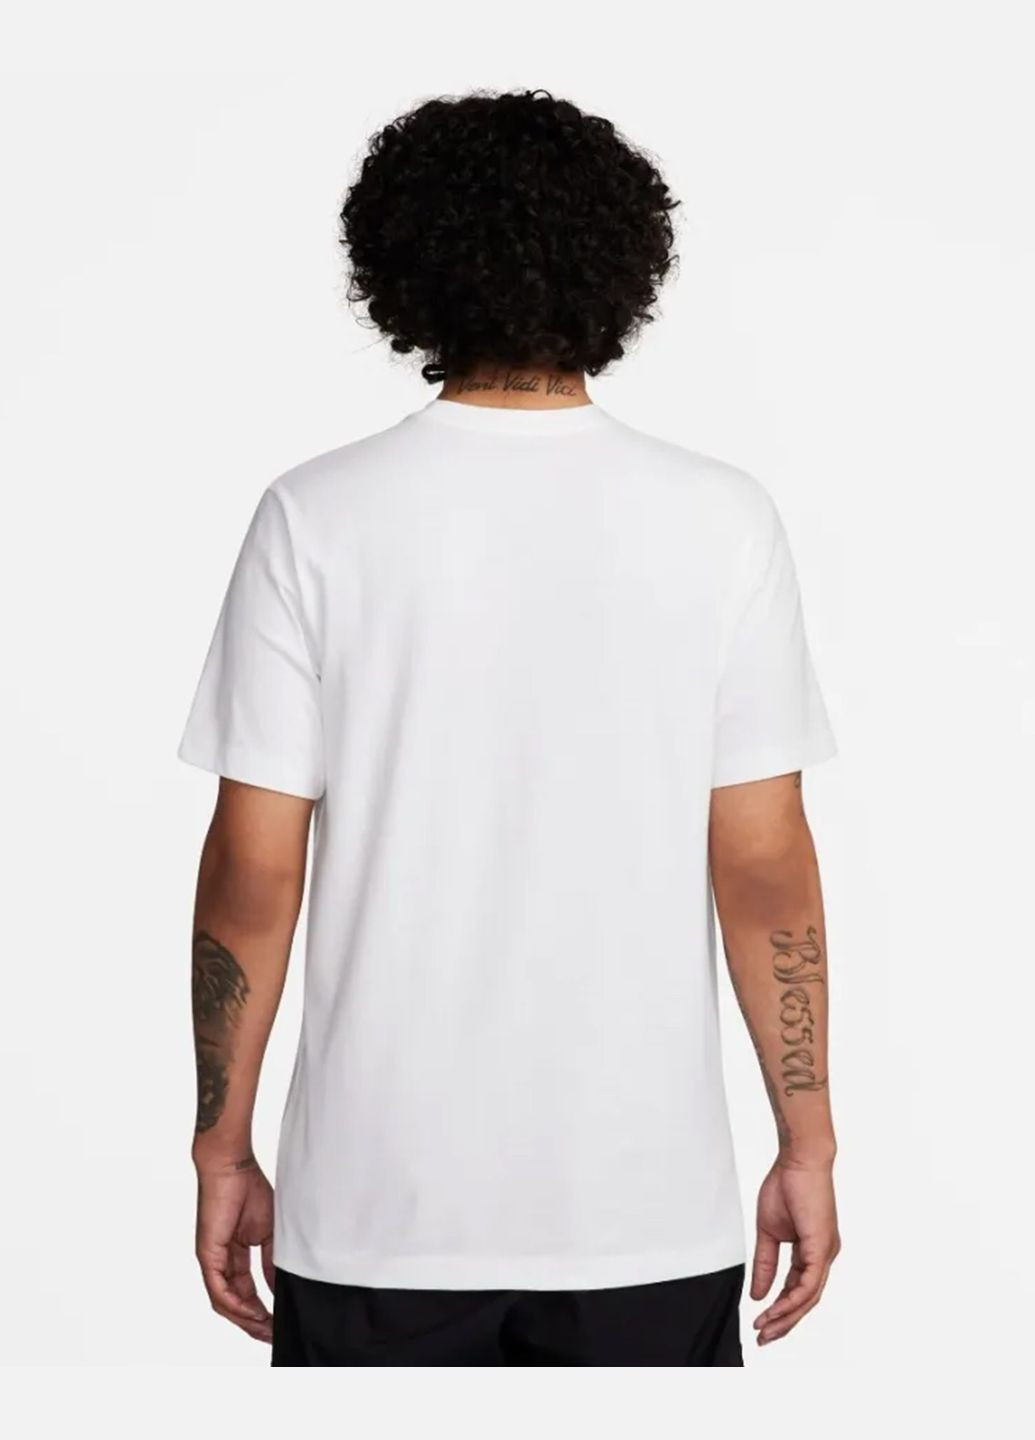 Біла футболка чоловіча m nsw tee 12mo futura sp24 fq8034-100 біла Nike